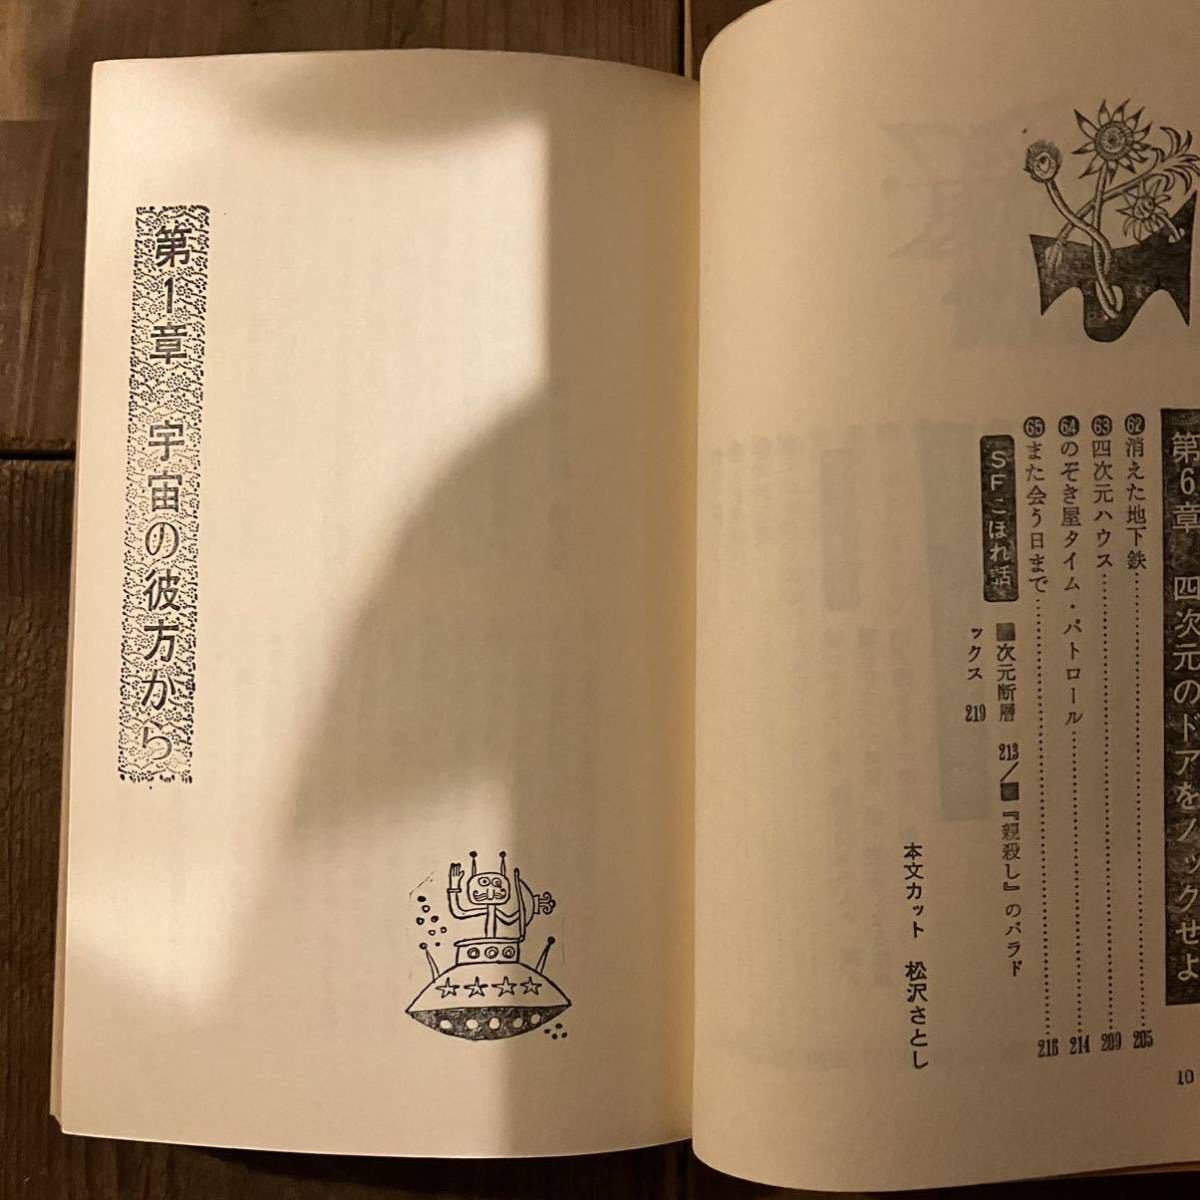 加納一郎 SFゲーム 知的プレーを楽しむクイズの本 昭和48年 日本文芸社 松沢さとし 絶版 古本_画像9